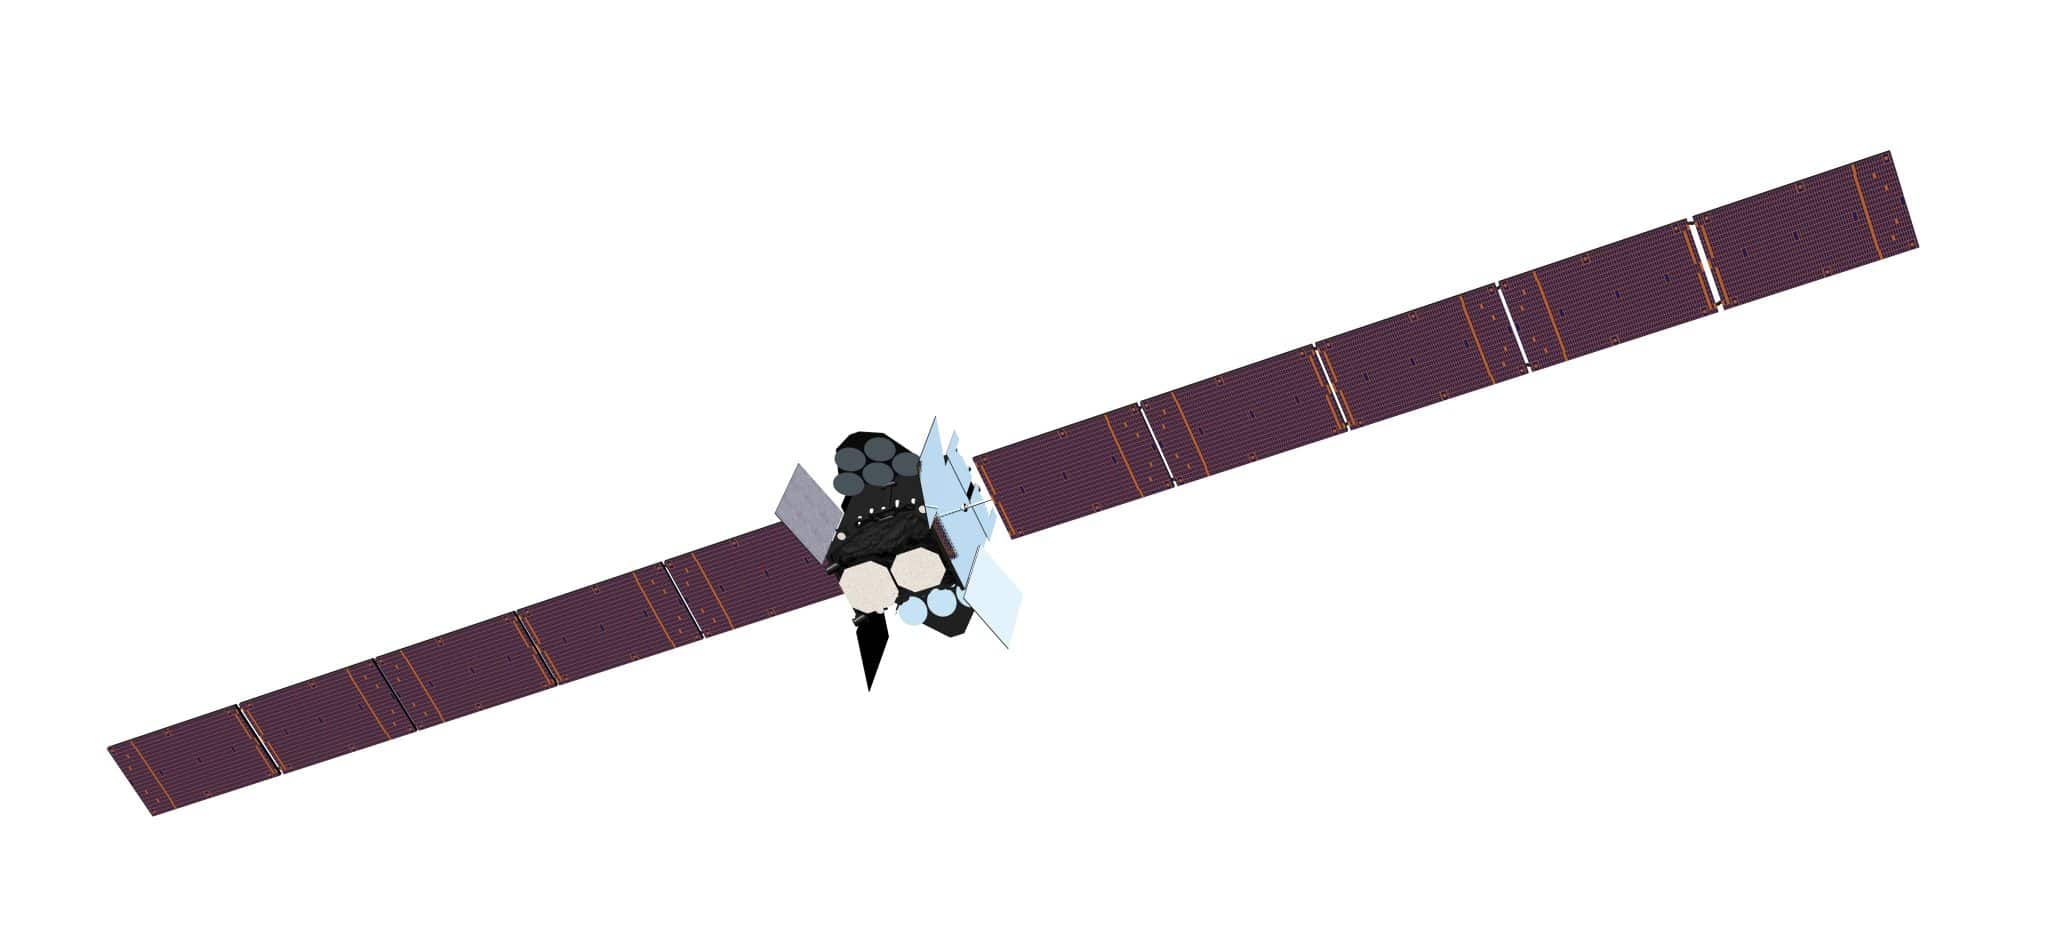 波音公司使用 3D 打印加速 WGS-11+ 卫星的生产